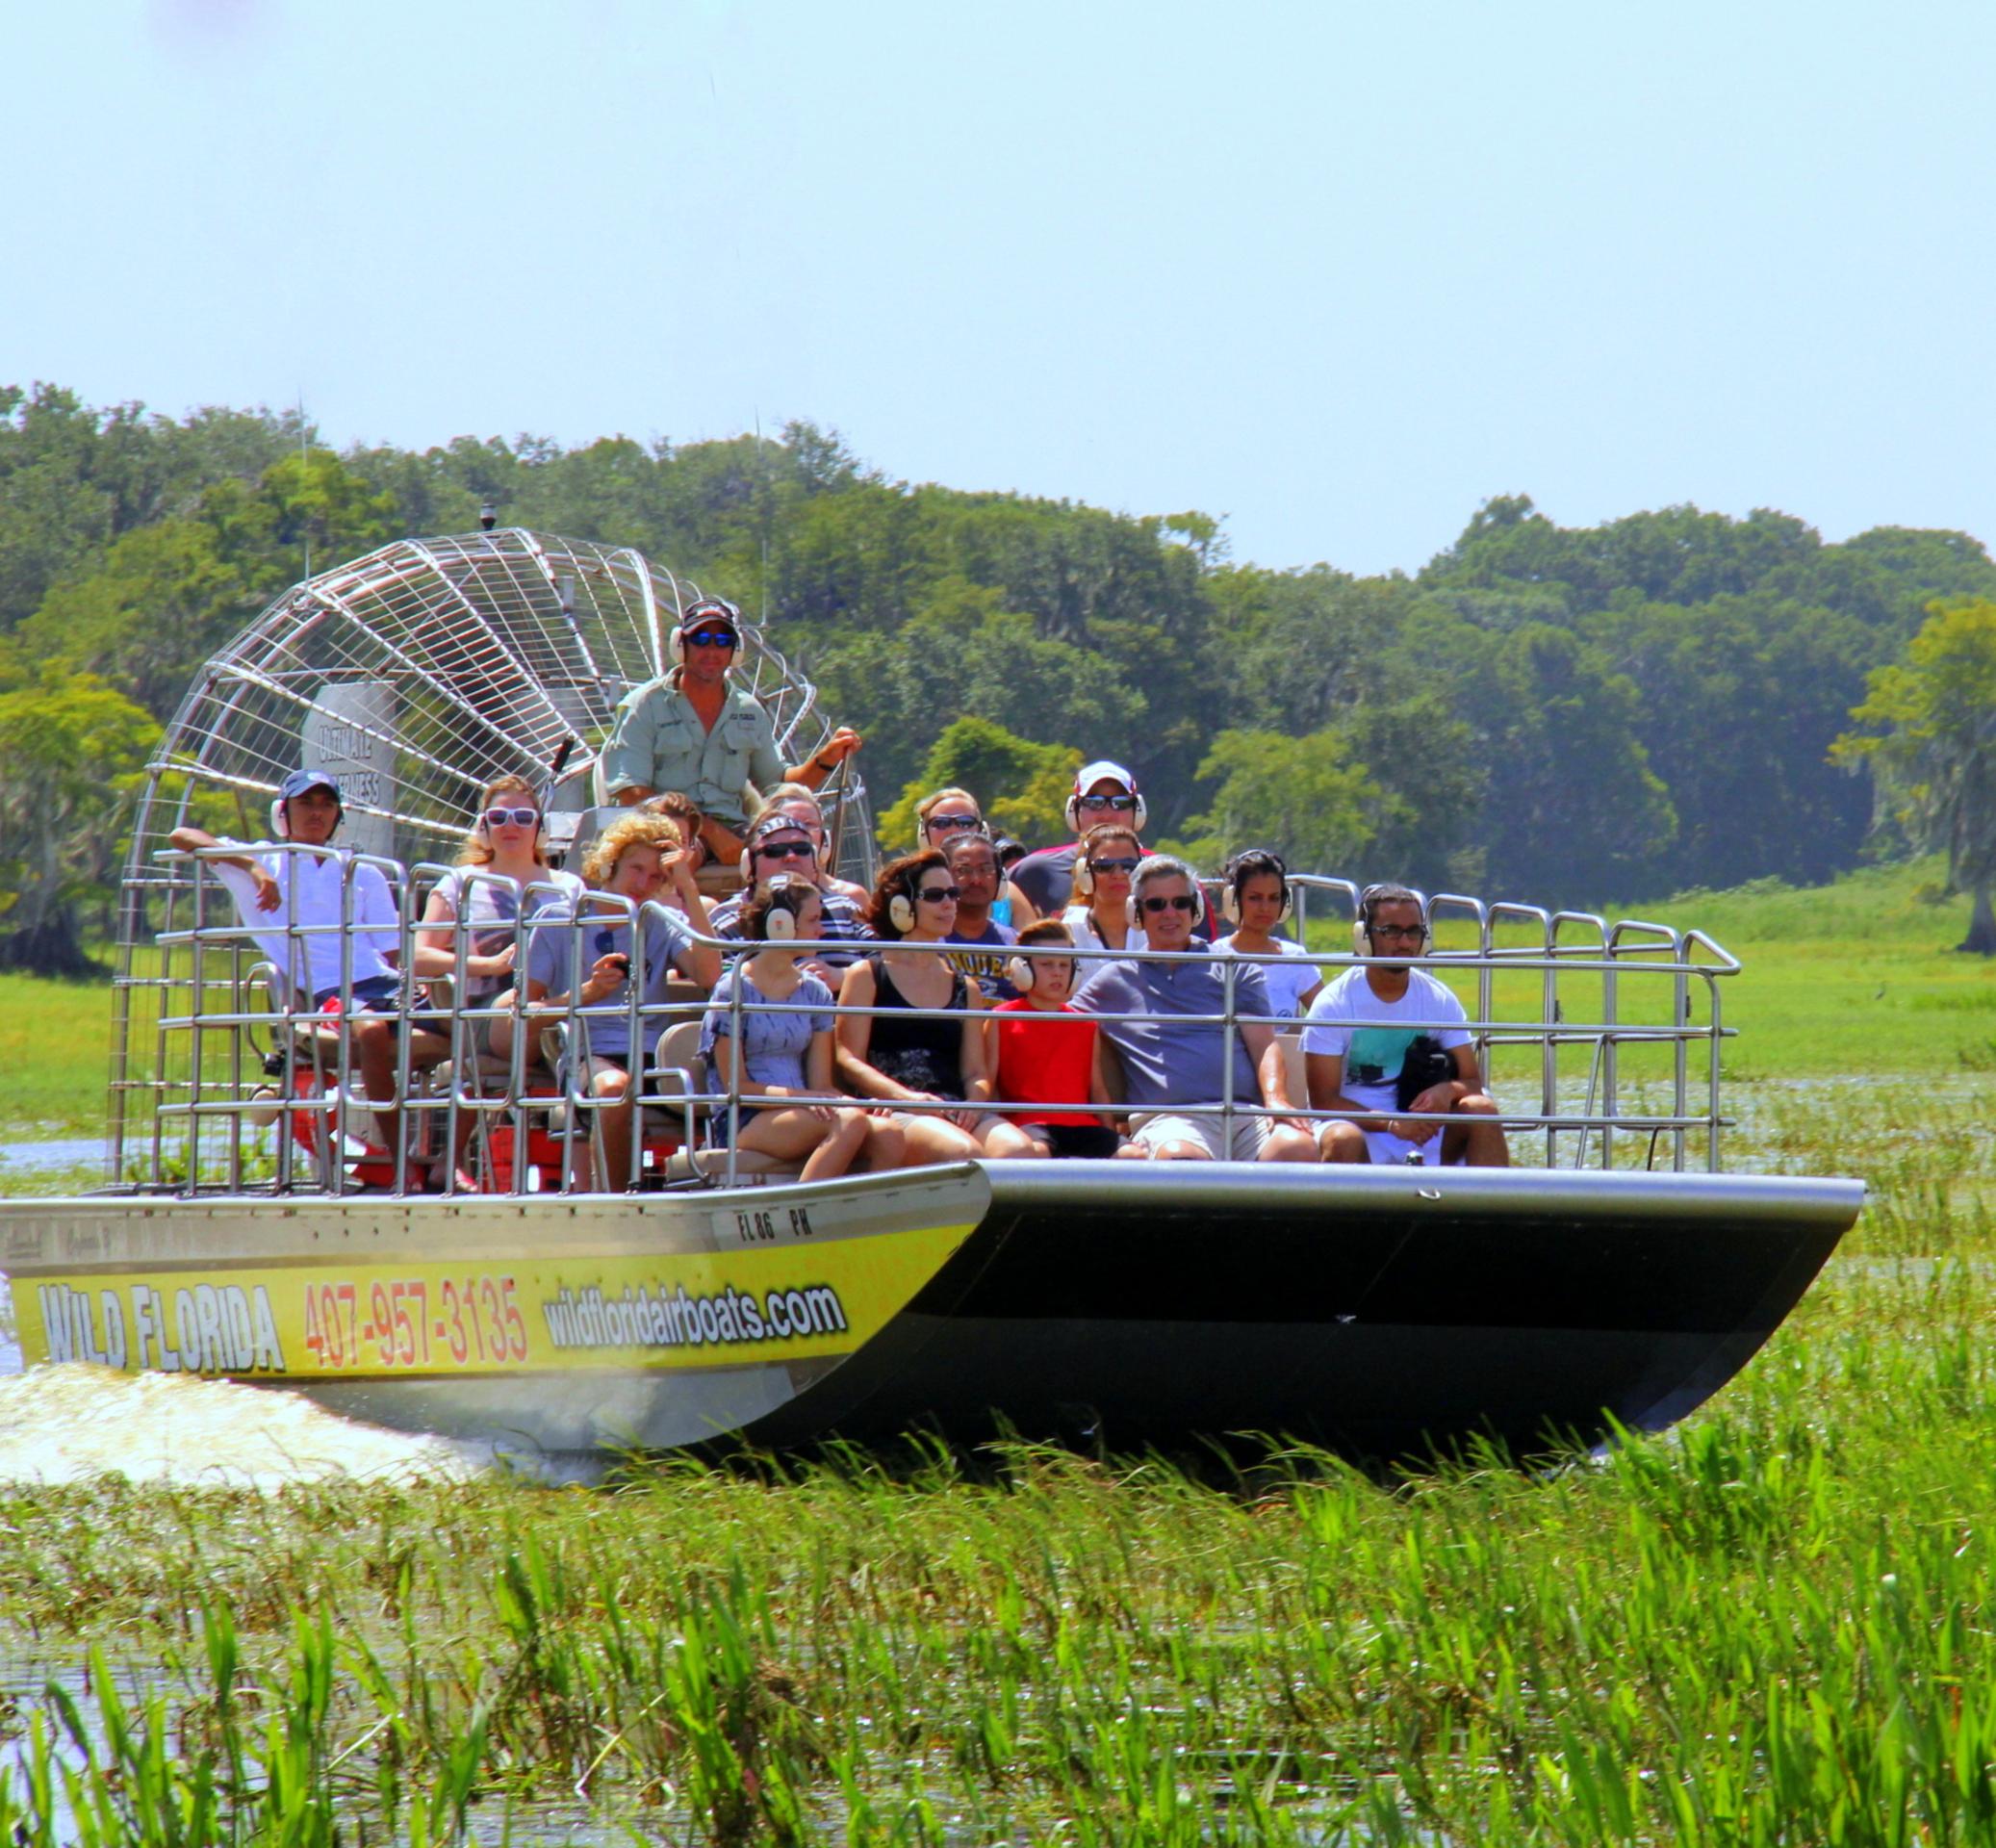 Tour en airboat dans les Everglades – Avec transport depuis Orlando